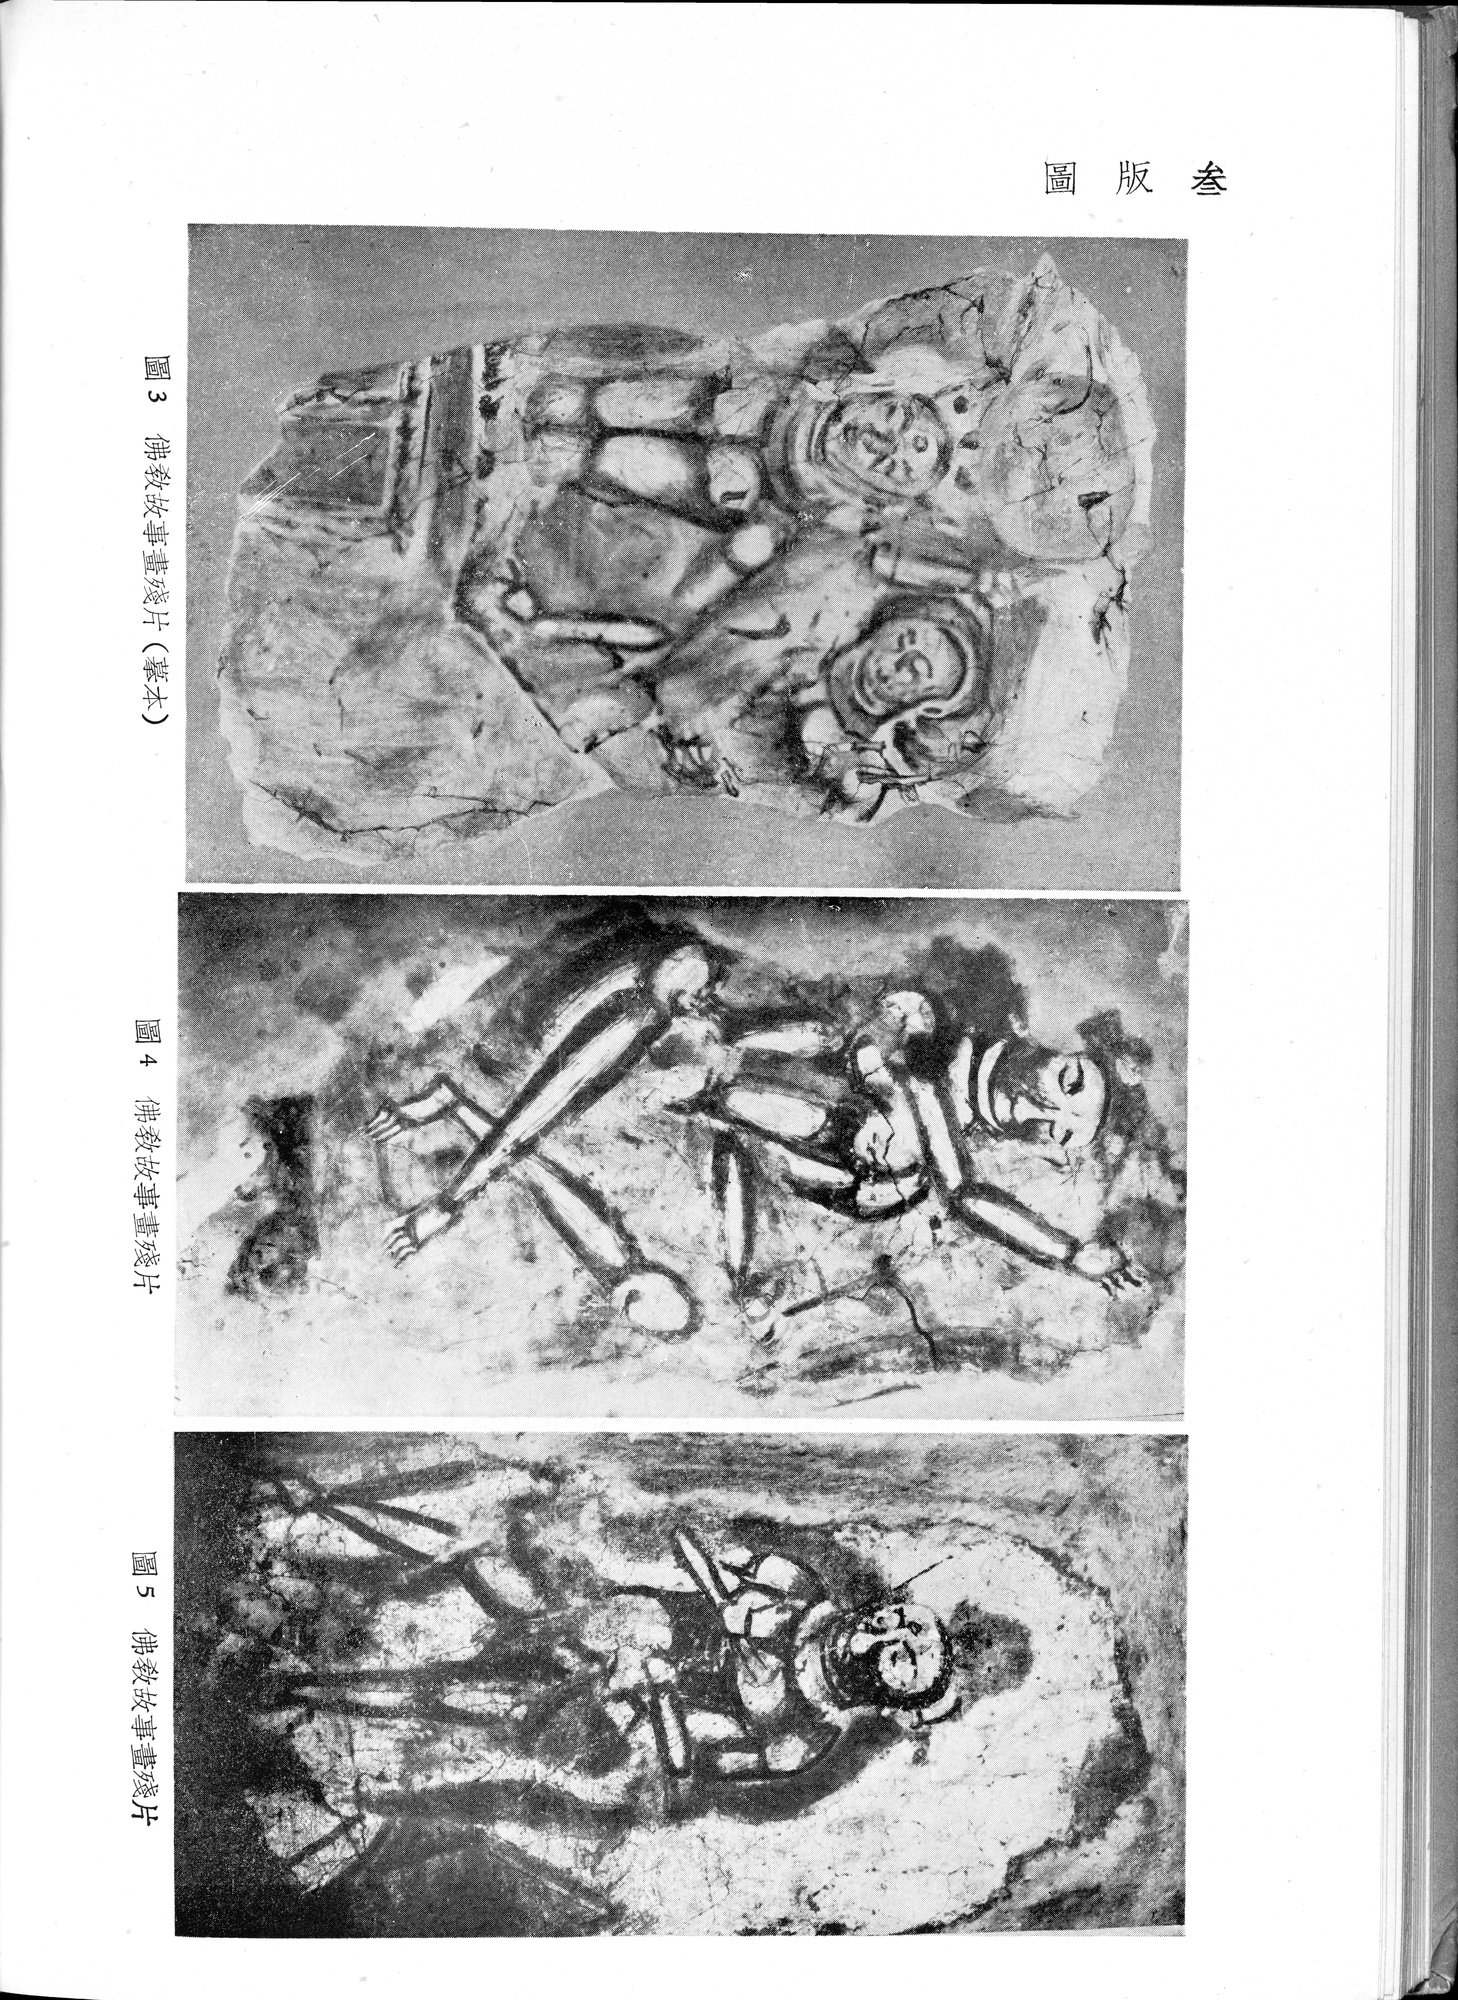 塔里木盆地考古記 : vol.1 / Page 212 (Grayscale High Resolution Image)